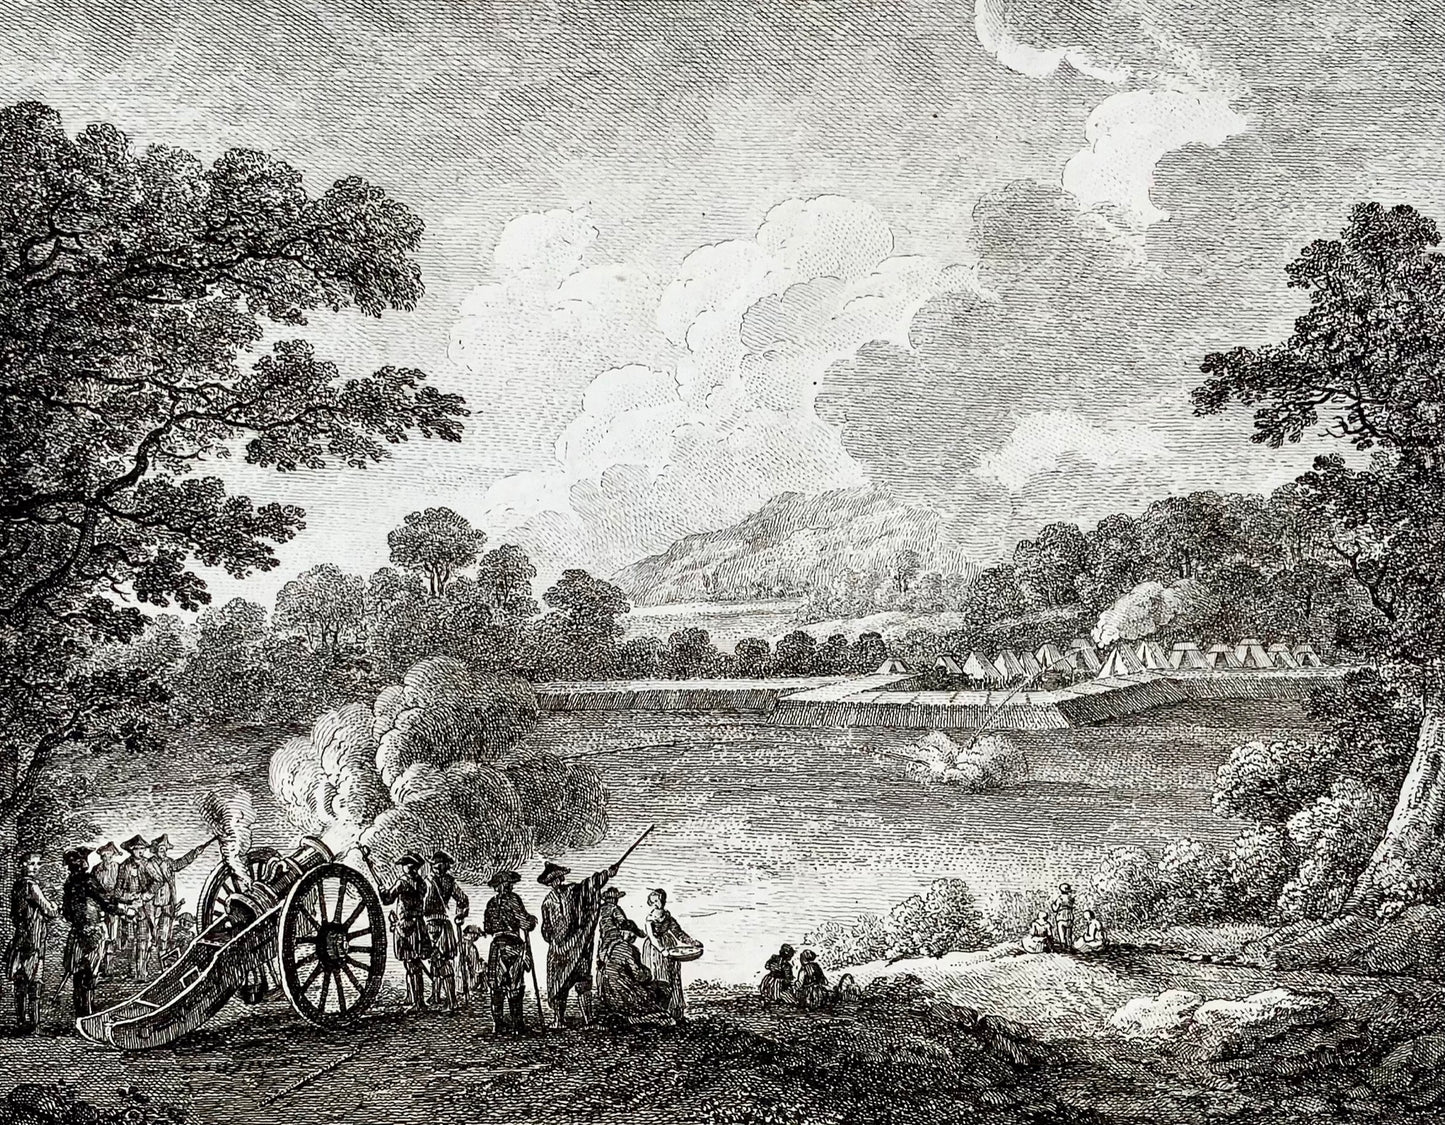 1748 BORDATA MILITARE Schellenberg 'Von der Lafete' Obici da artiglieria da campo